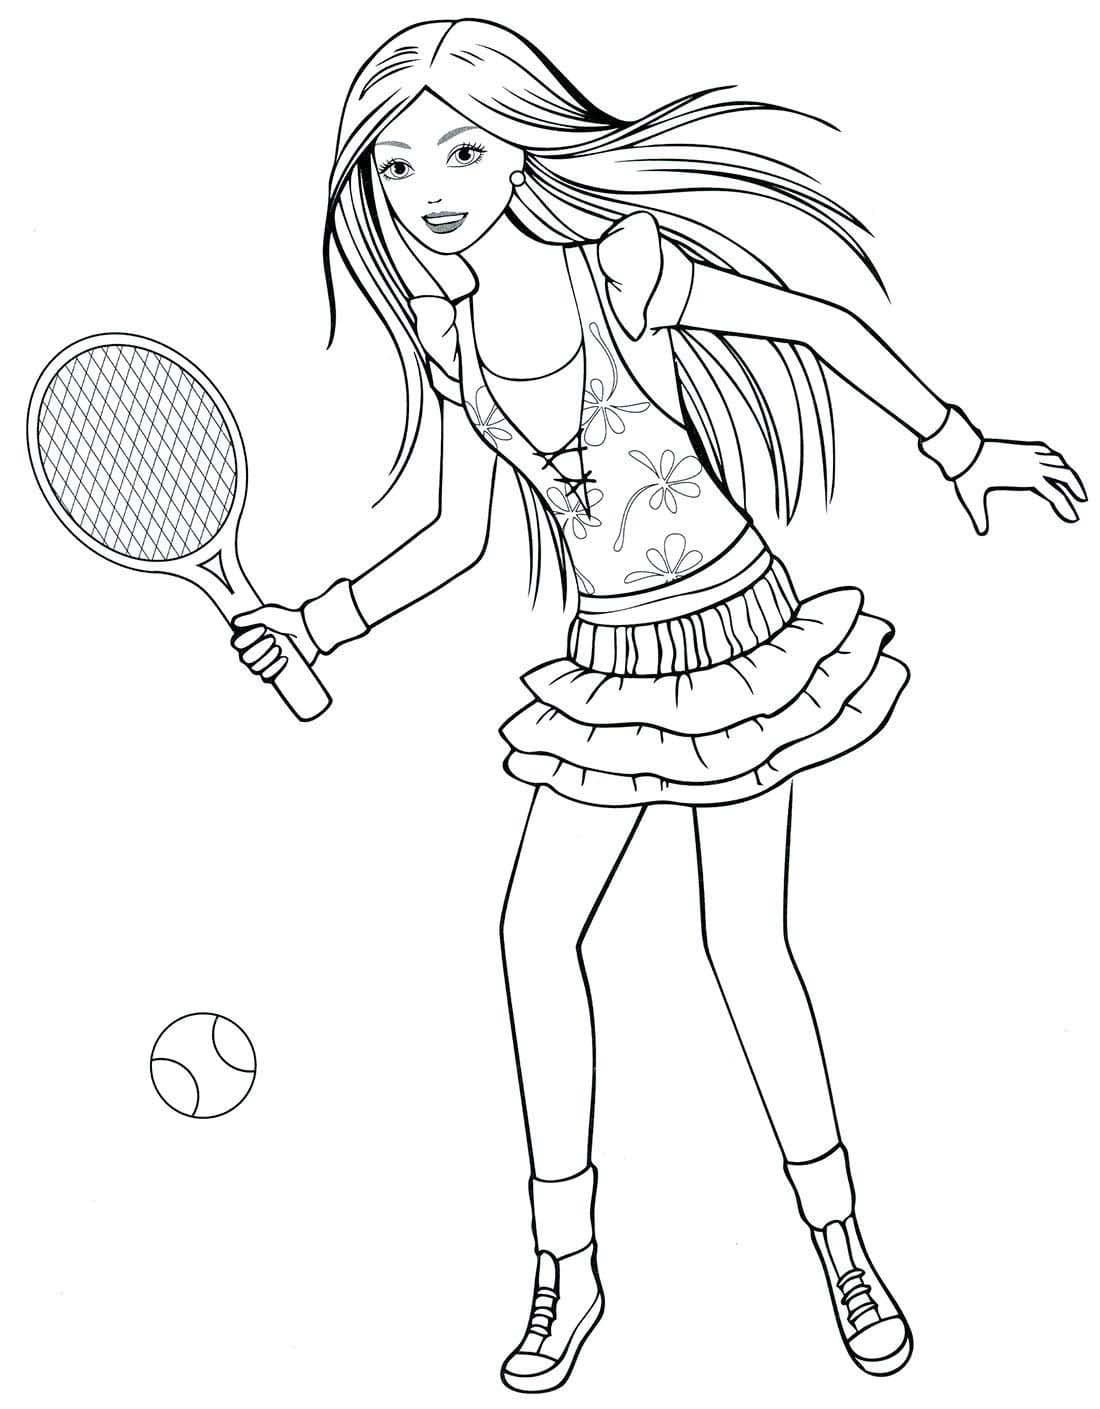 Девушка играет в большой теннис